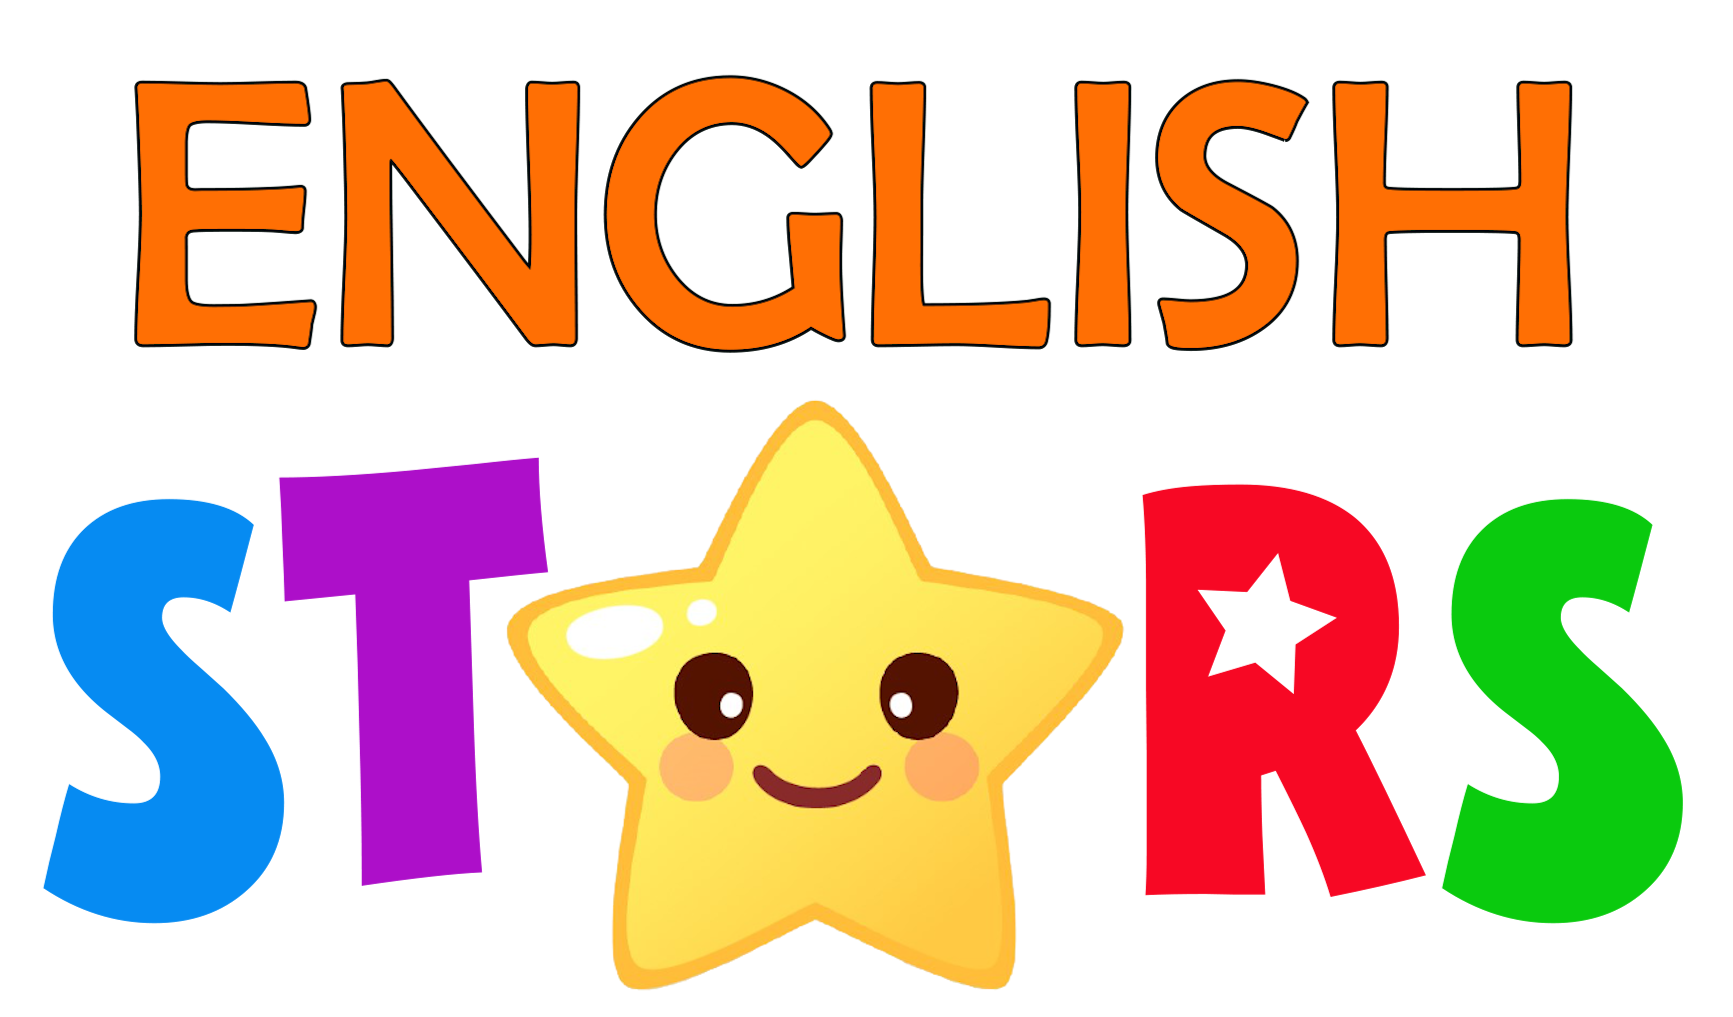 Как переводится с английского star